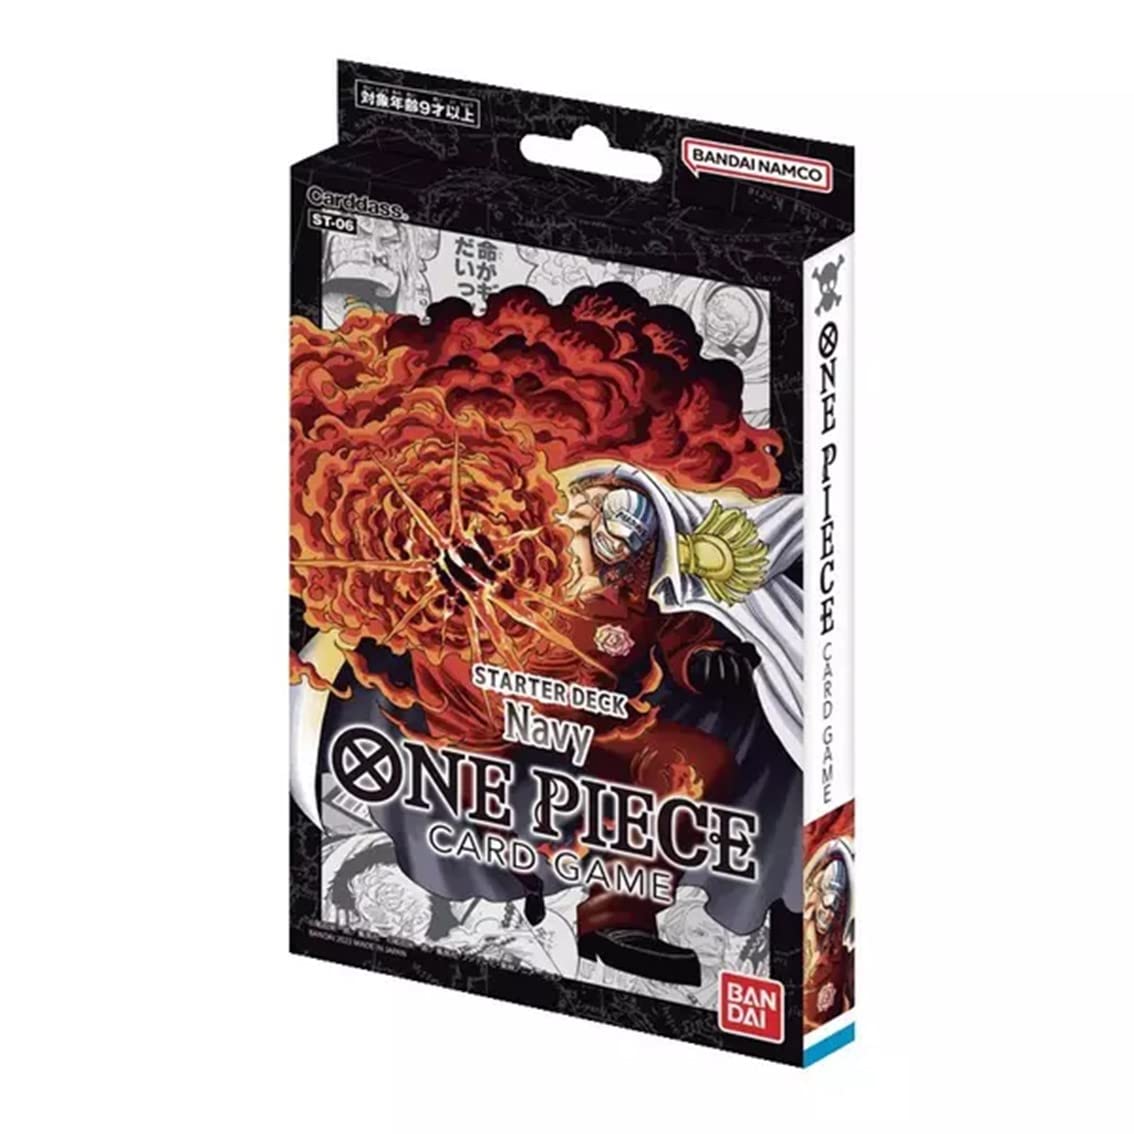 One Piece Card Game Navy Starter Deck (ST-06)